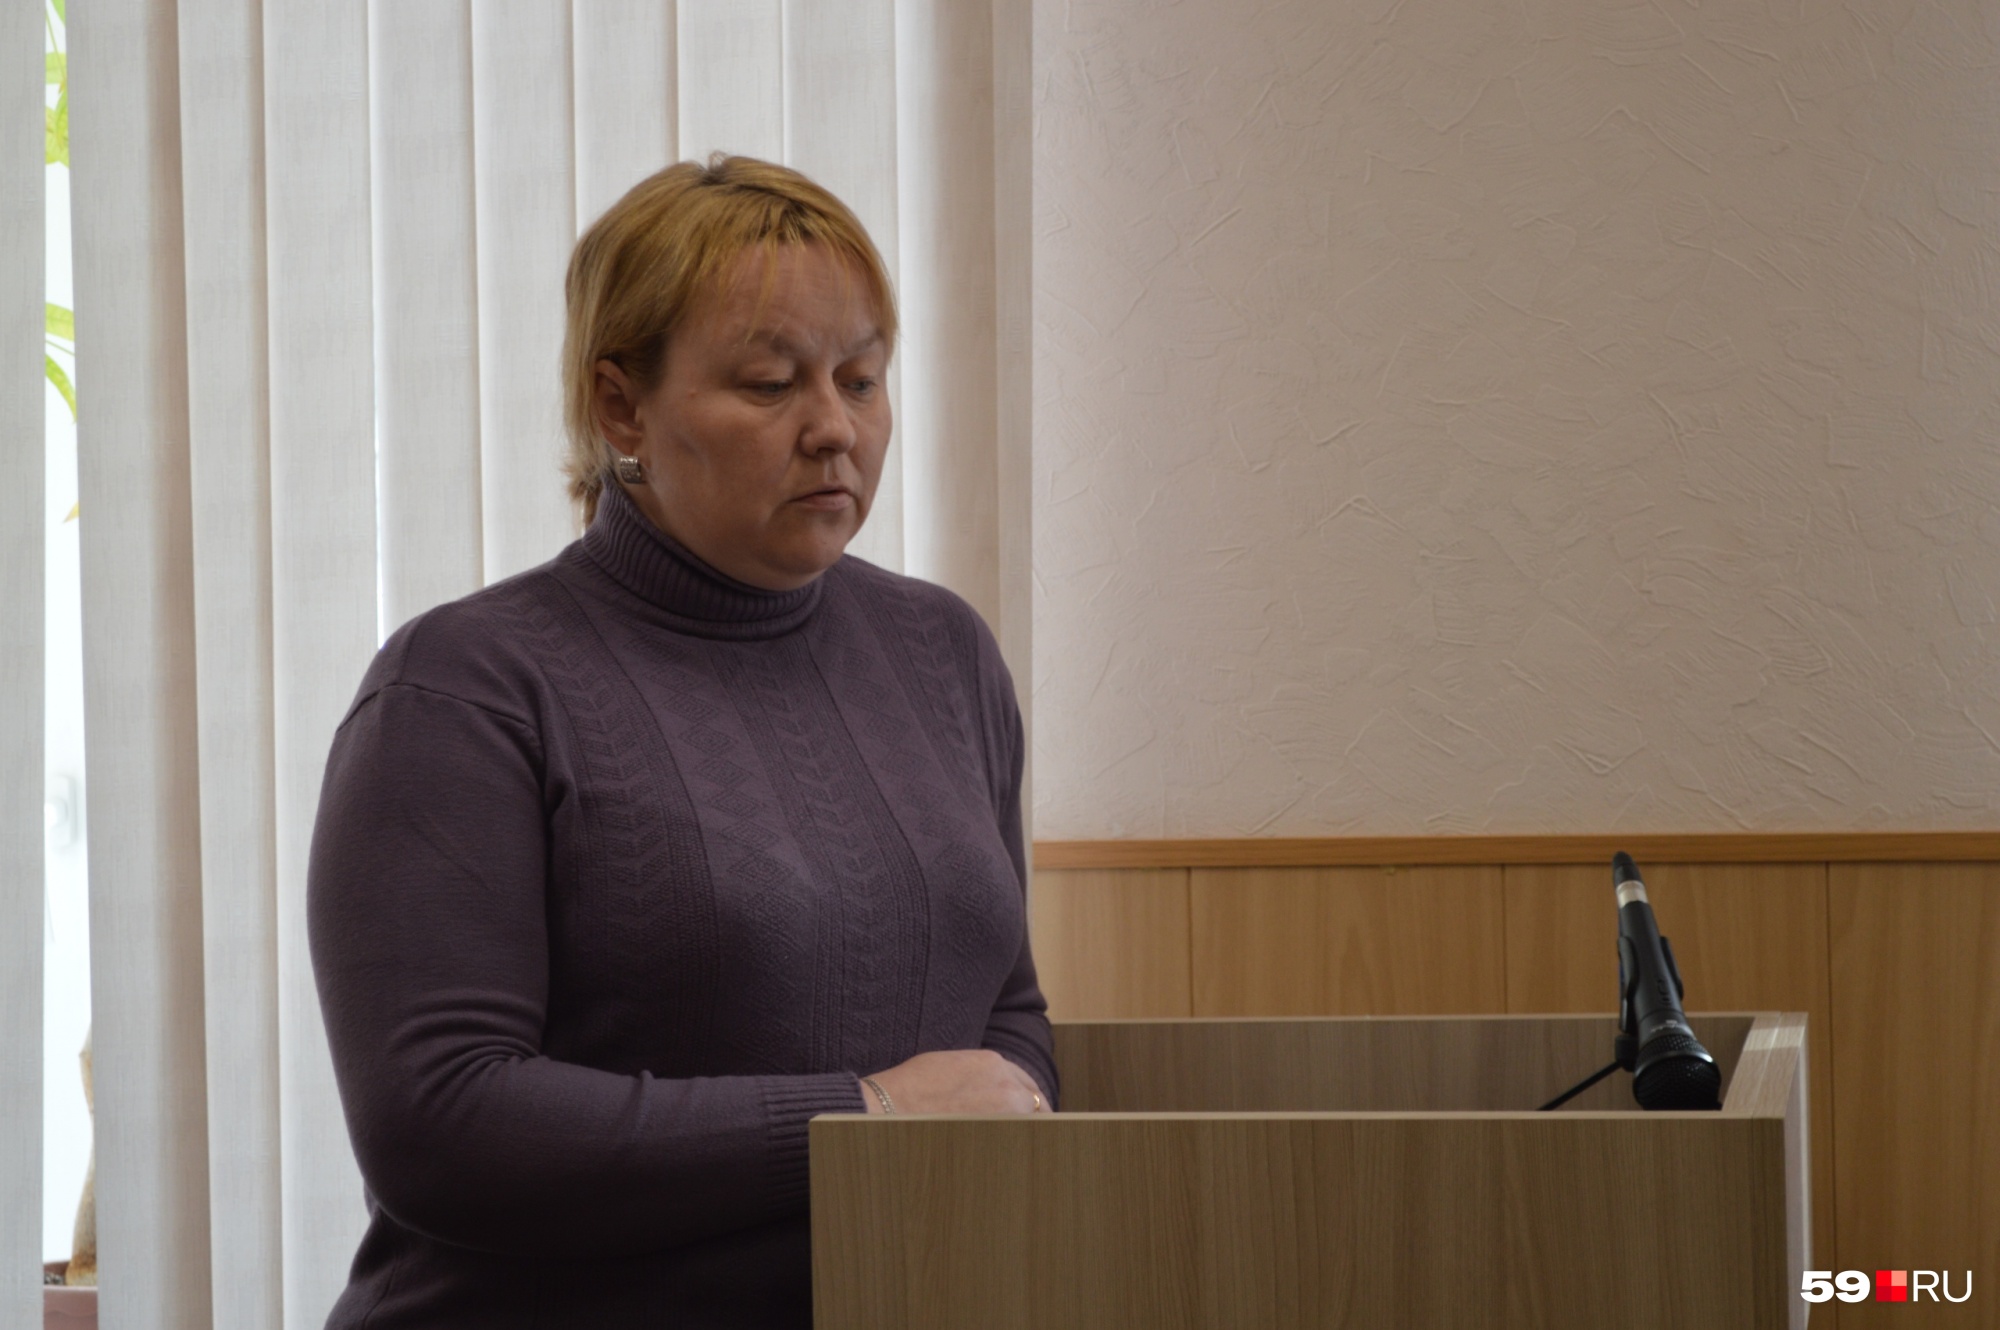 На суде водитель автобуса маршрута № 68 Светлана рассказала, что скорость она набрала, чтобы уйти от столкновения — если бы она этого не сделала, жертв могло быть еще больше